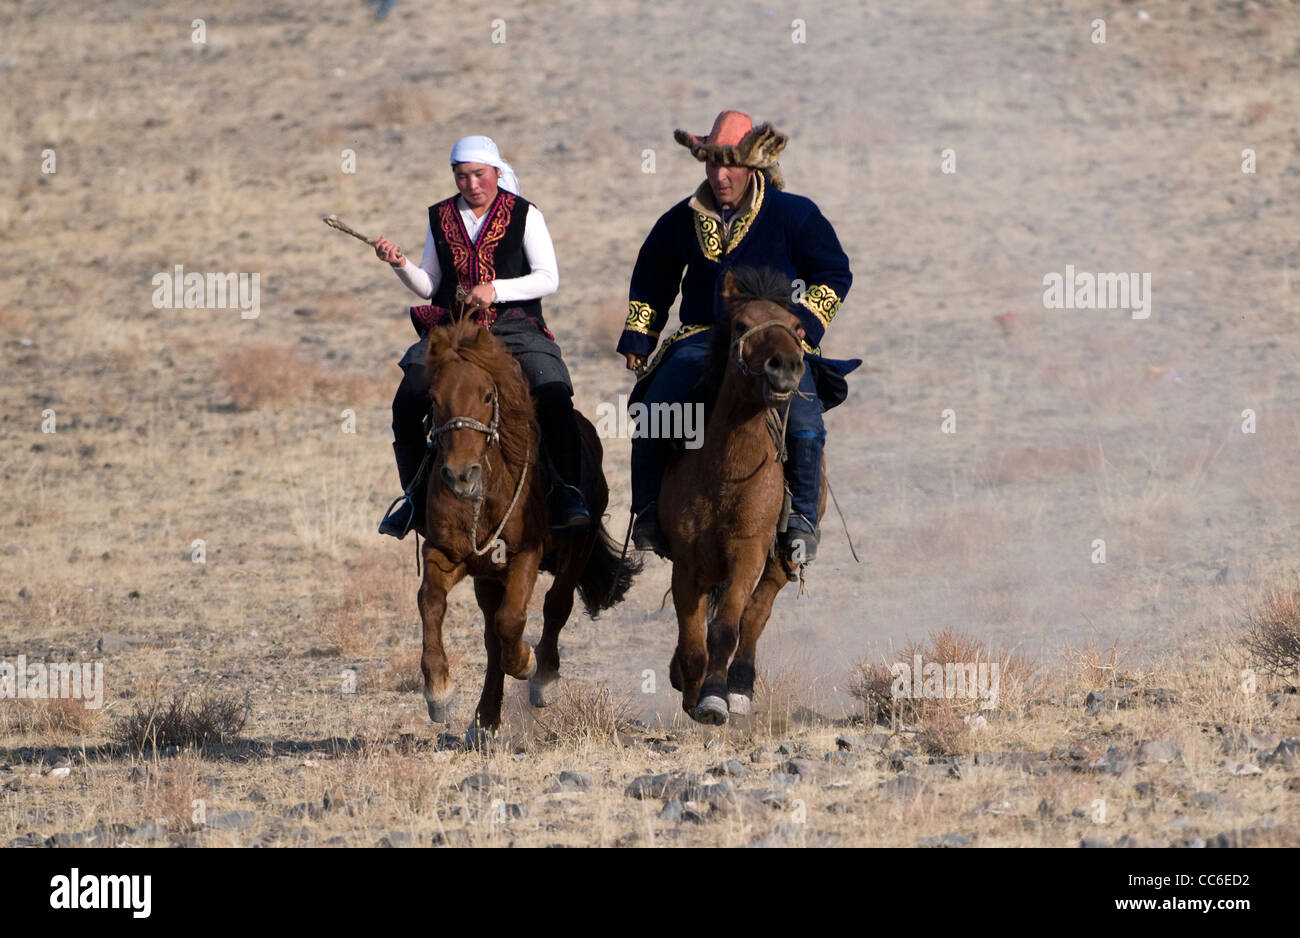 Kuu kyz, une course de chevaux kazakh traditionnel entre l'homme et de la femme. Banque D'Images